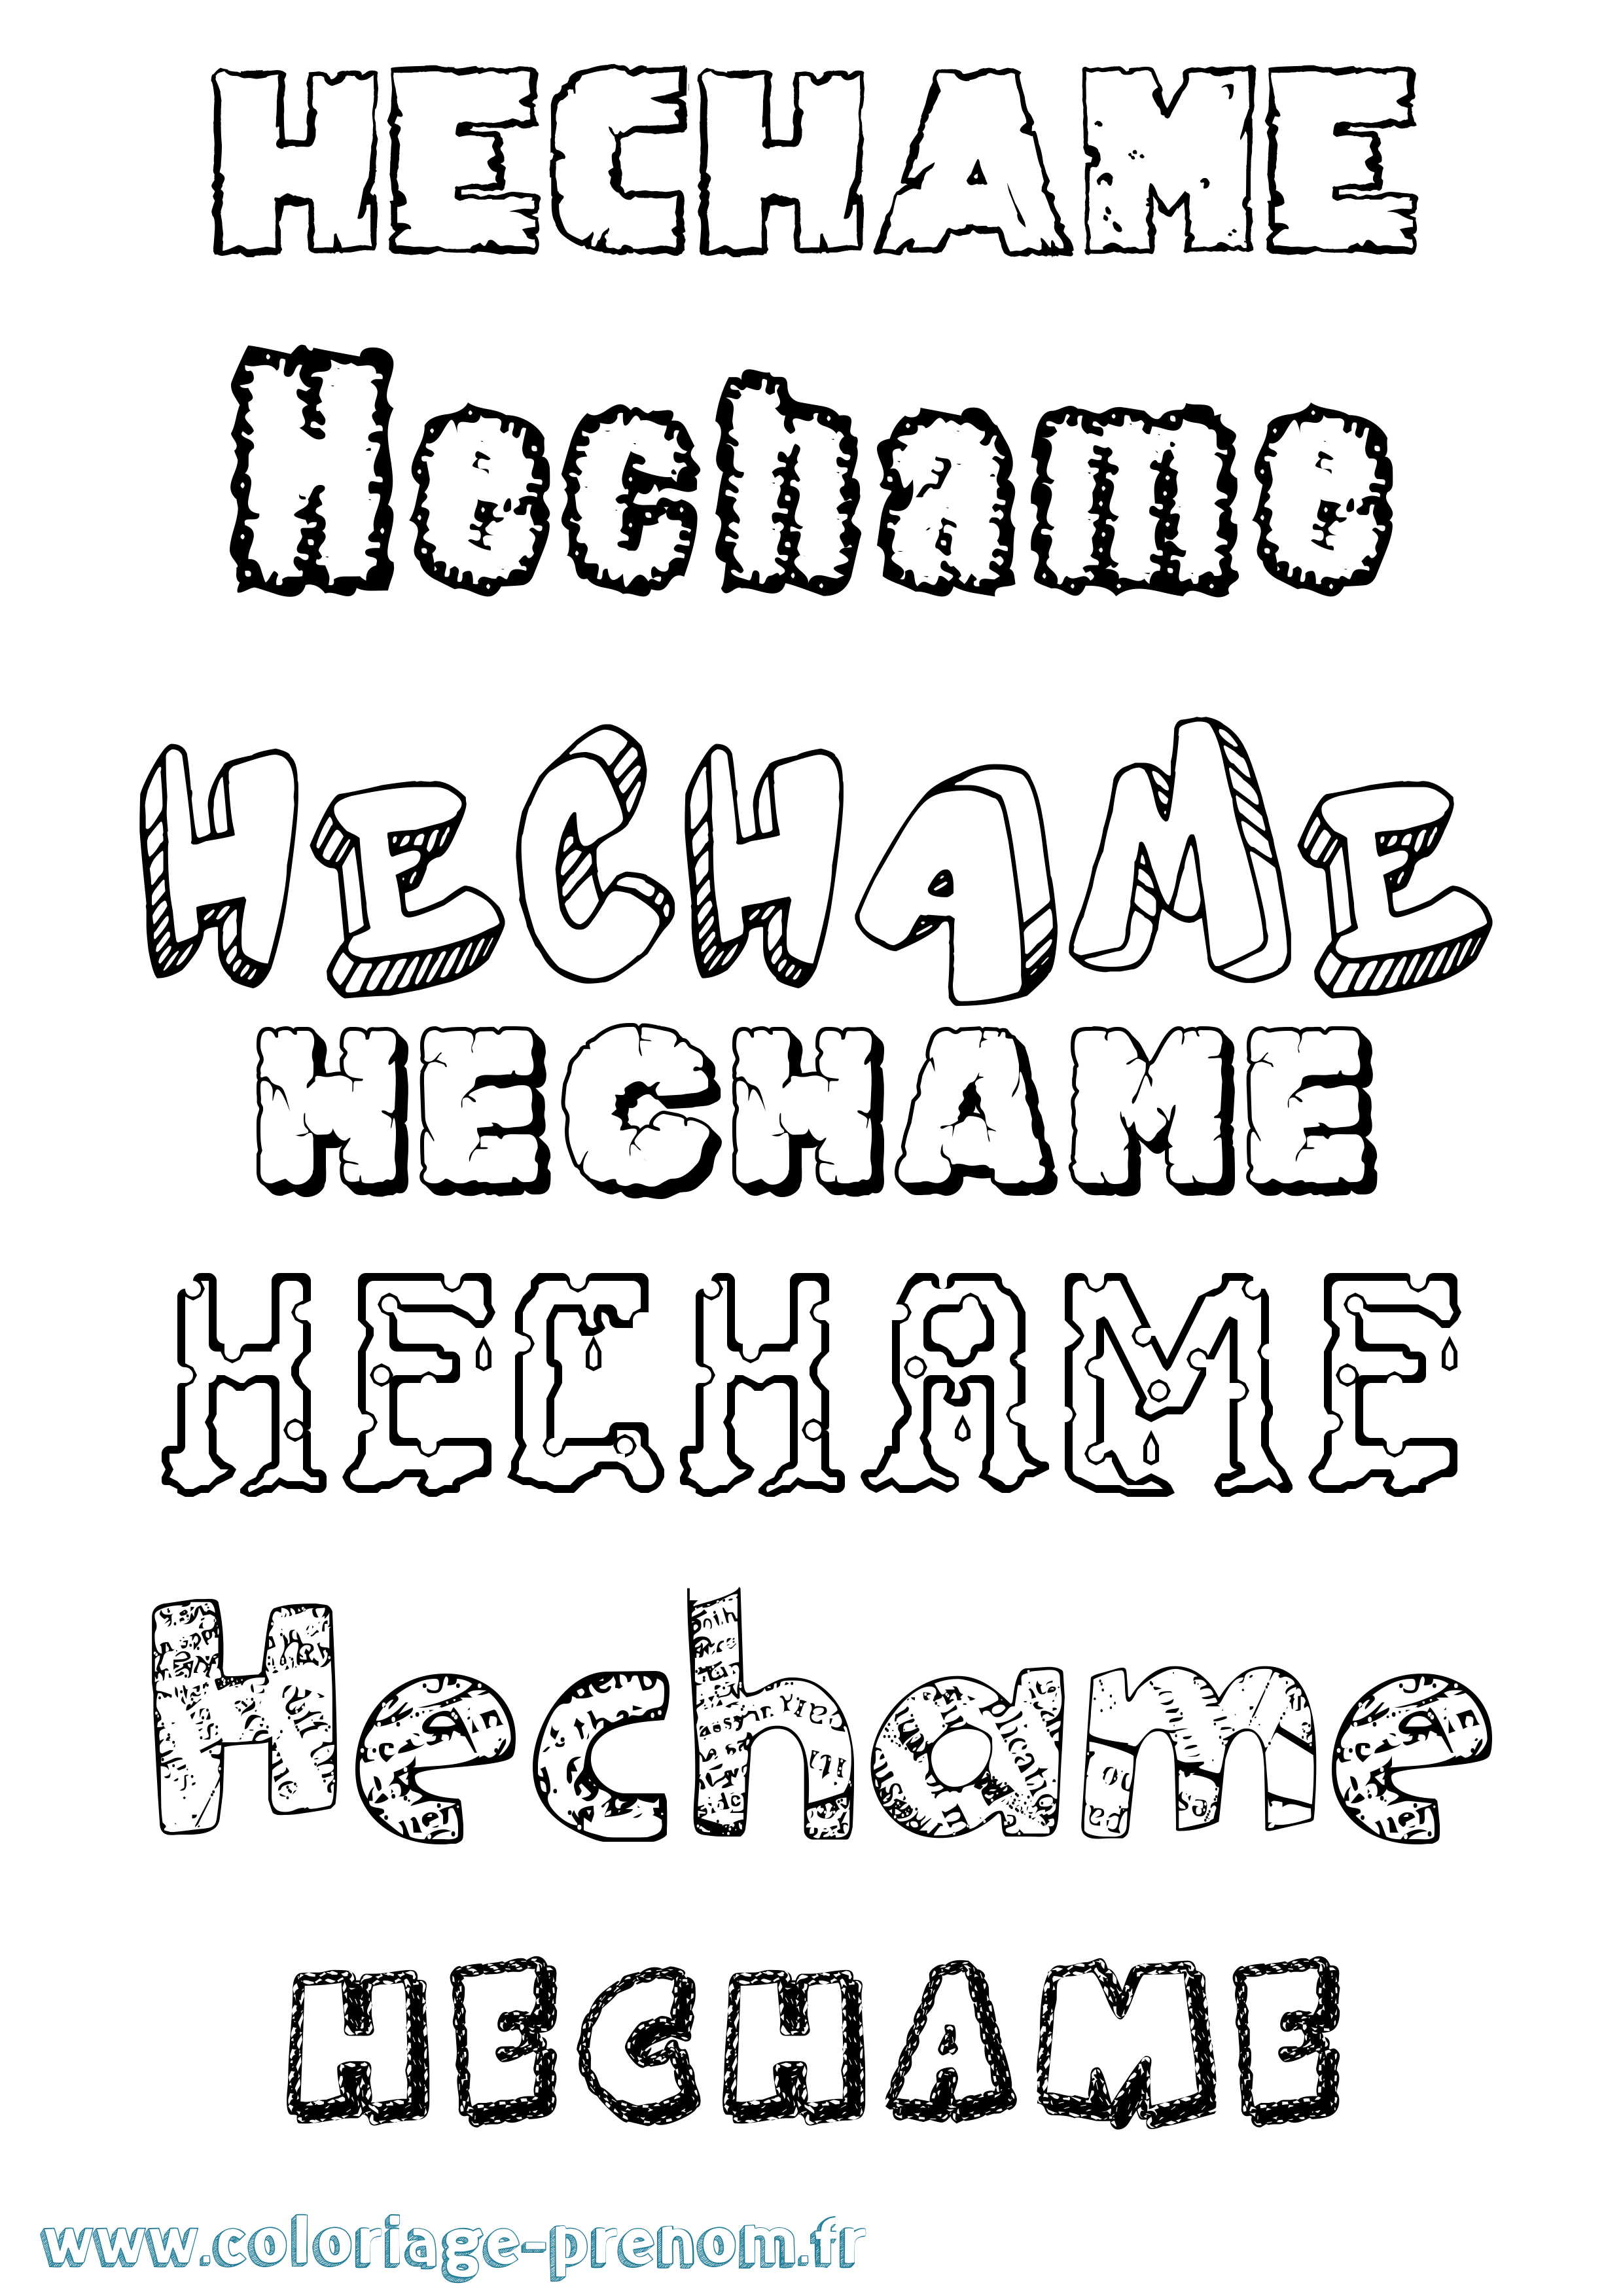 Coloriage prénom Hechame Destructuré